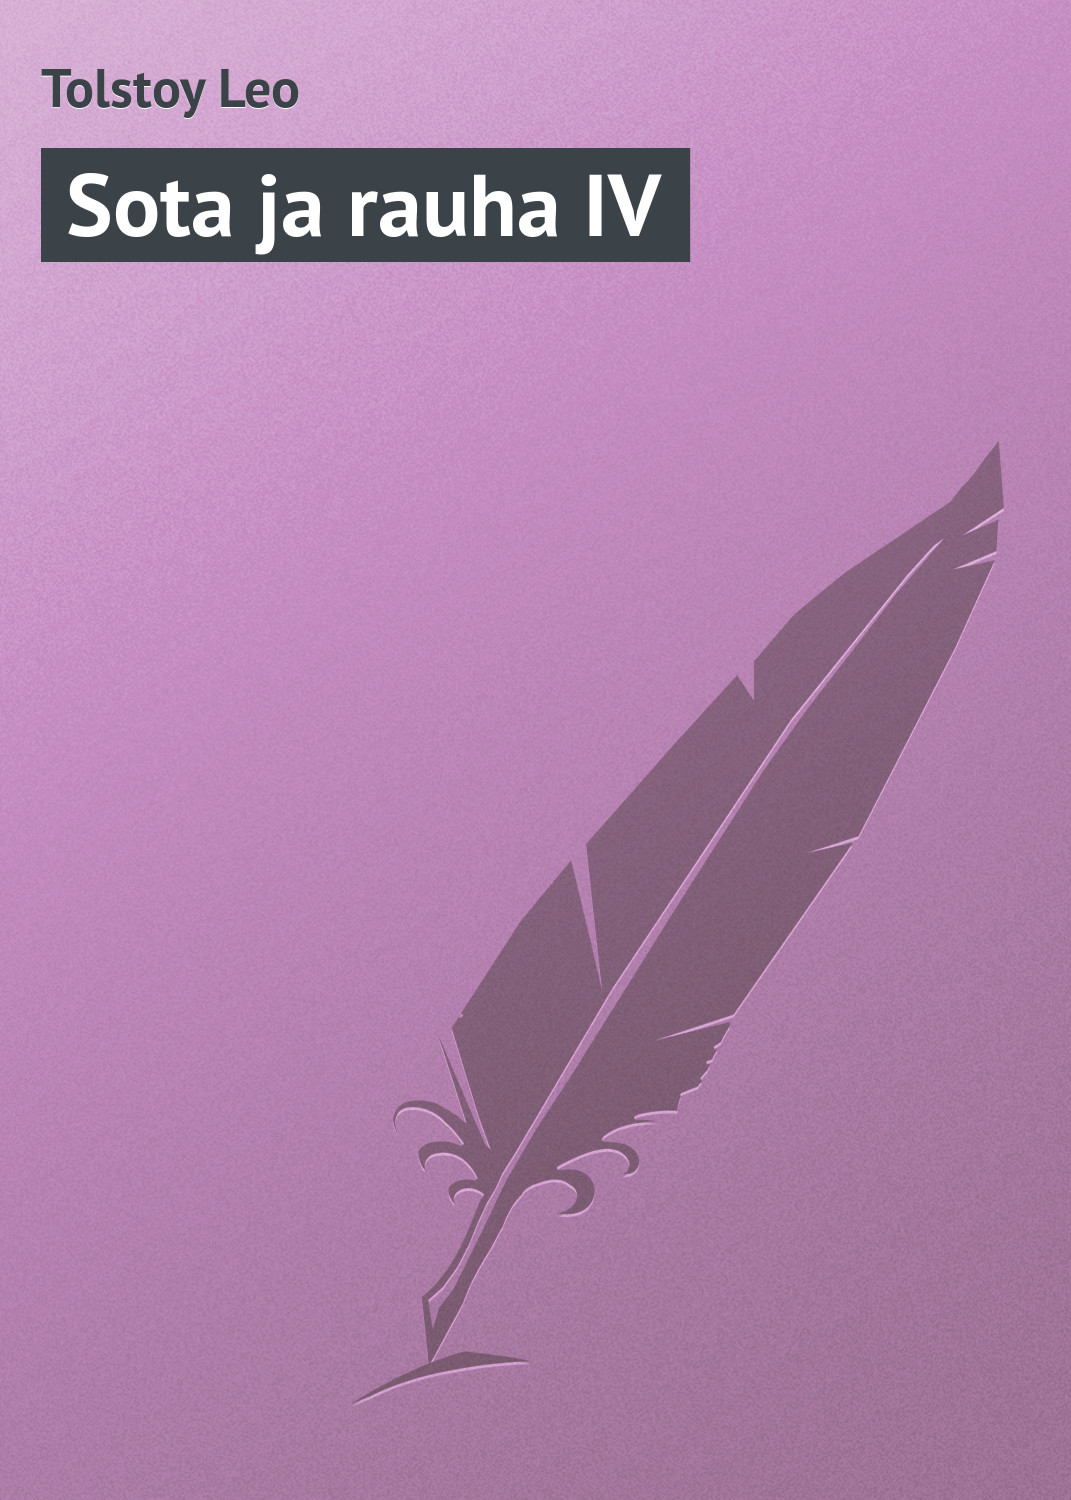 Книга Sota ja rauha IV из серии , созданная Leo Tolstoy, может относится к жанру Русская классика. Стоимость электронной книги Sota ja rauha IV с идентификатором 23169819 составляет 5.99 руб.